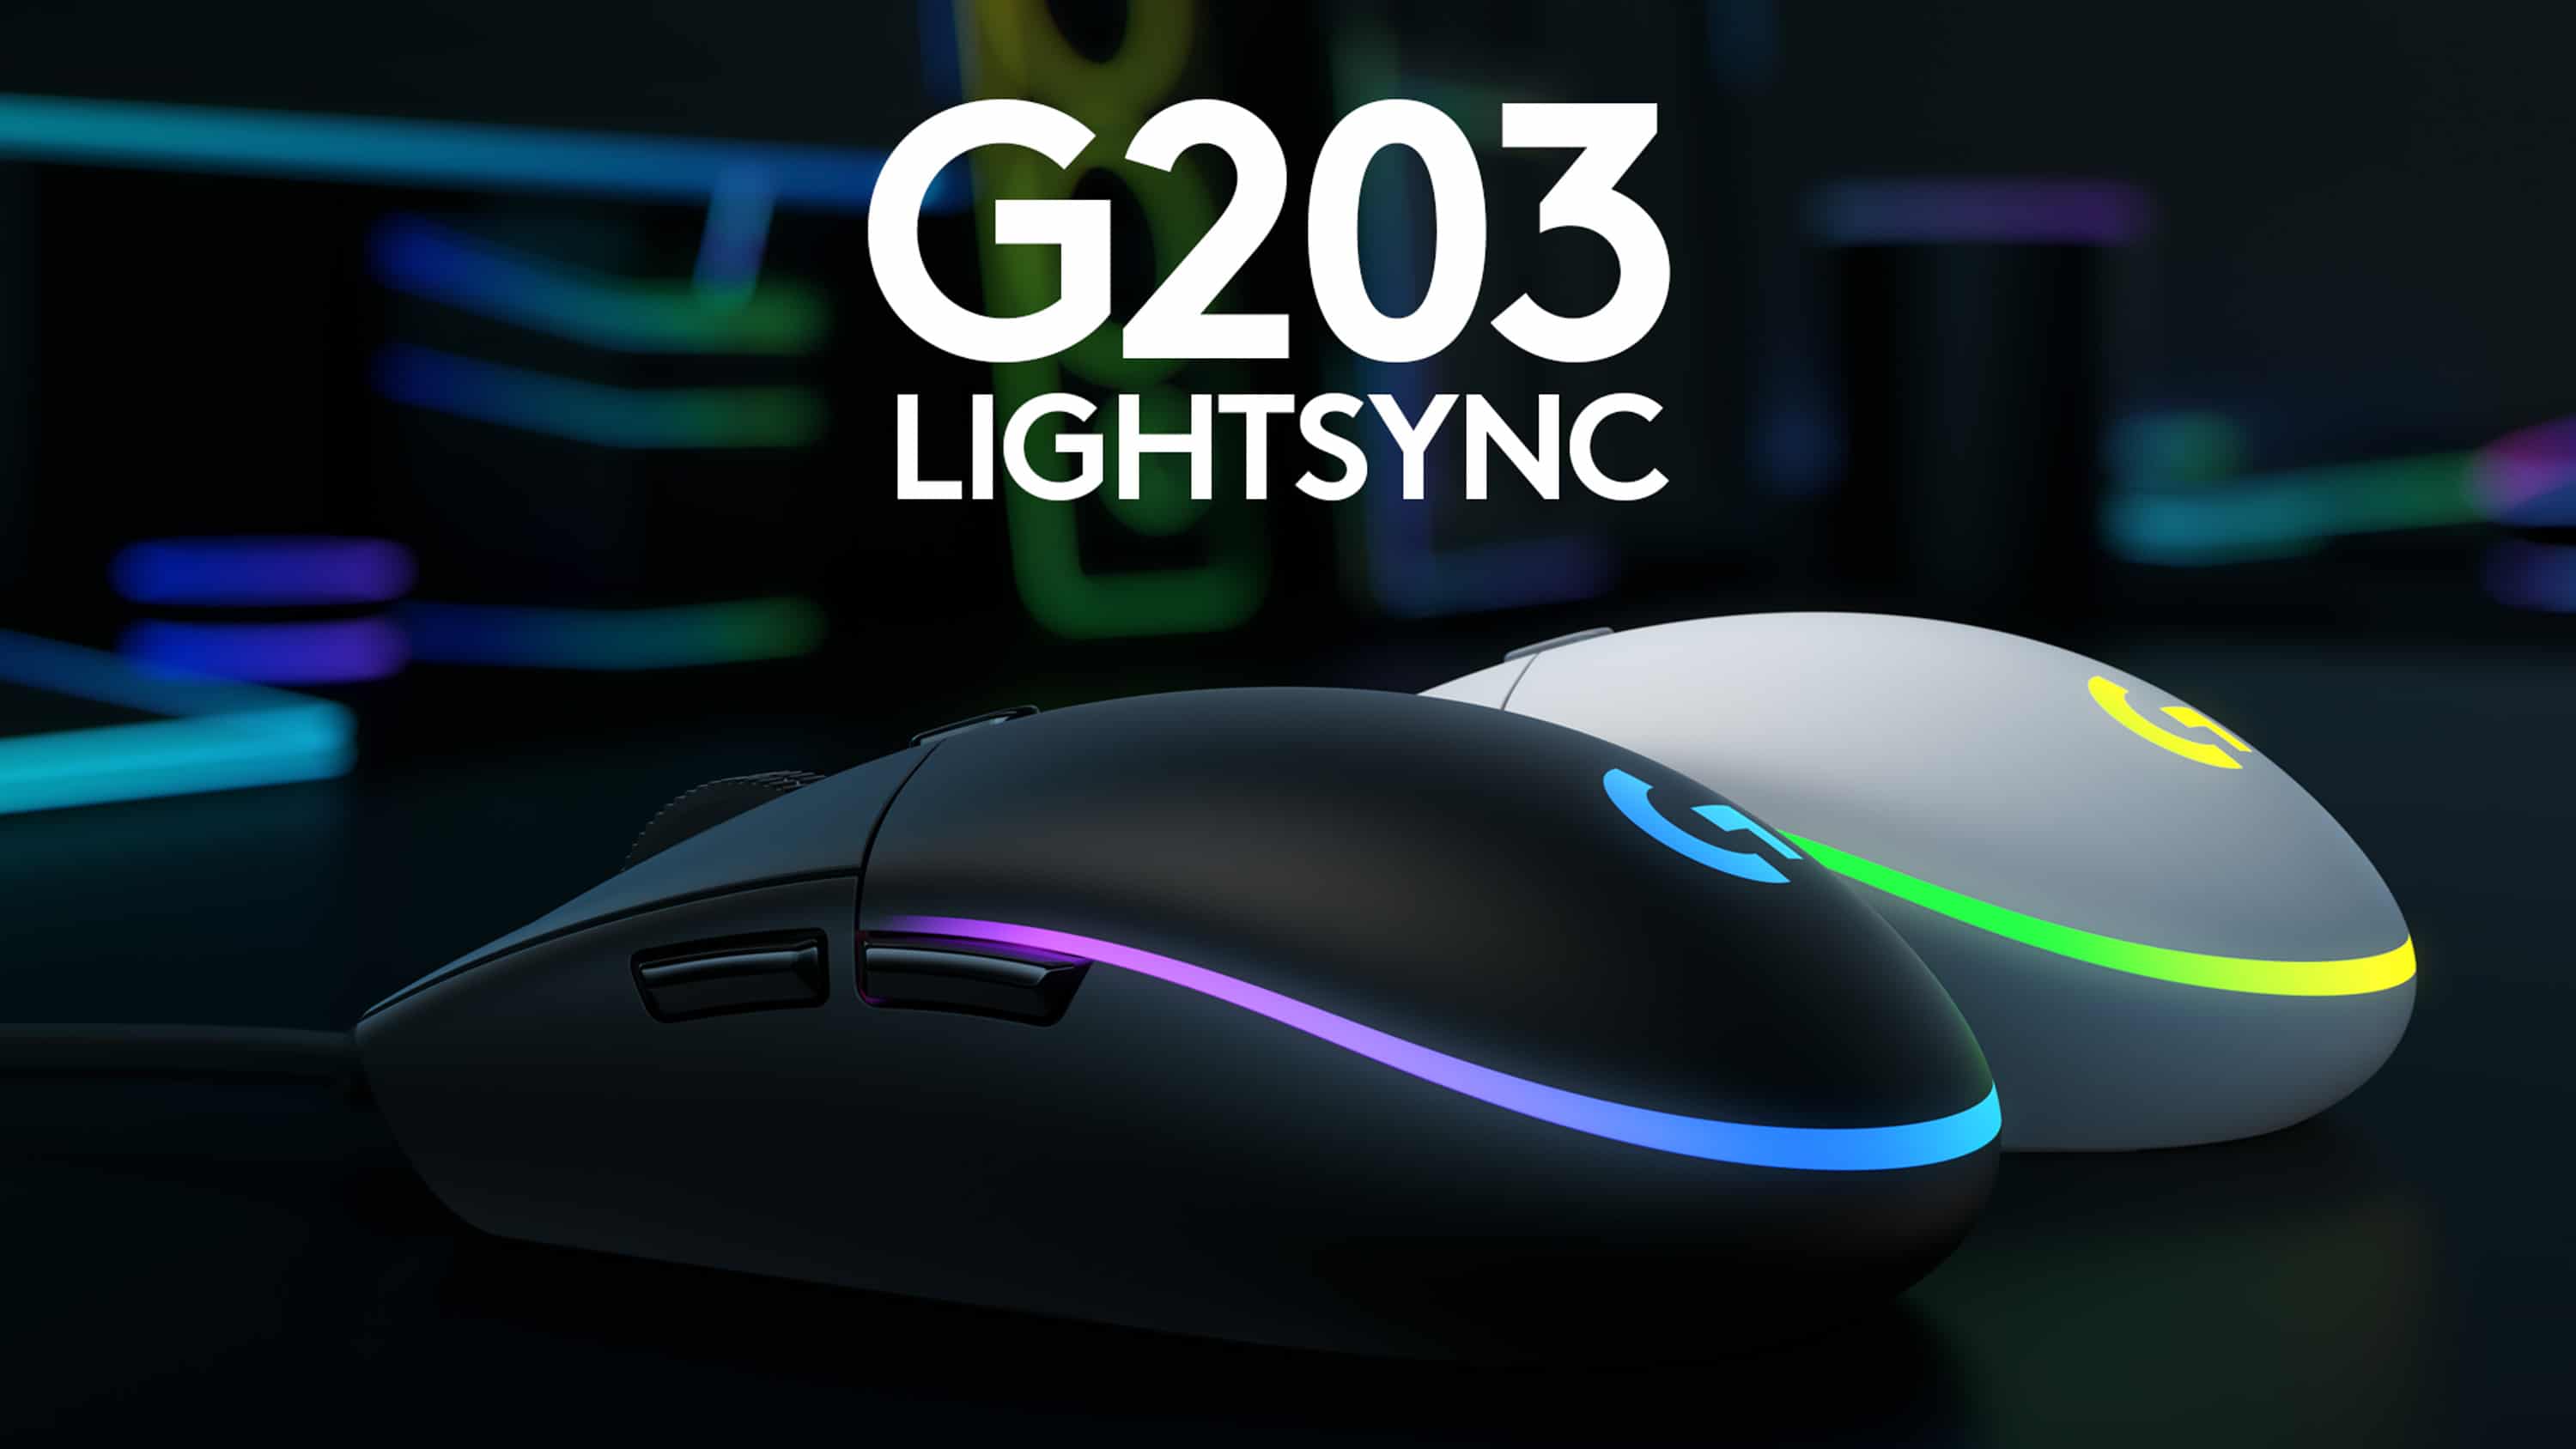 Nouvelle souris Gaming Logitech G203 LIGHTSYNC offre des